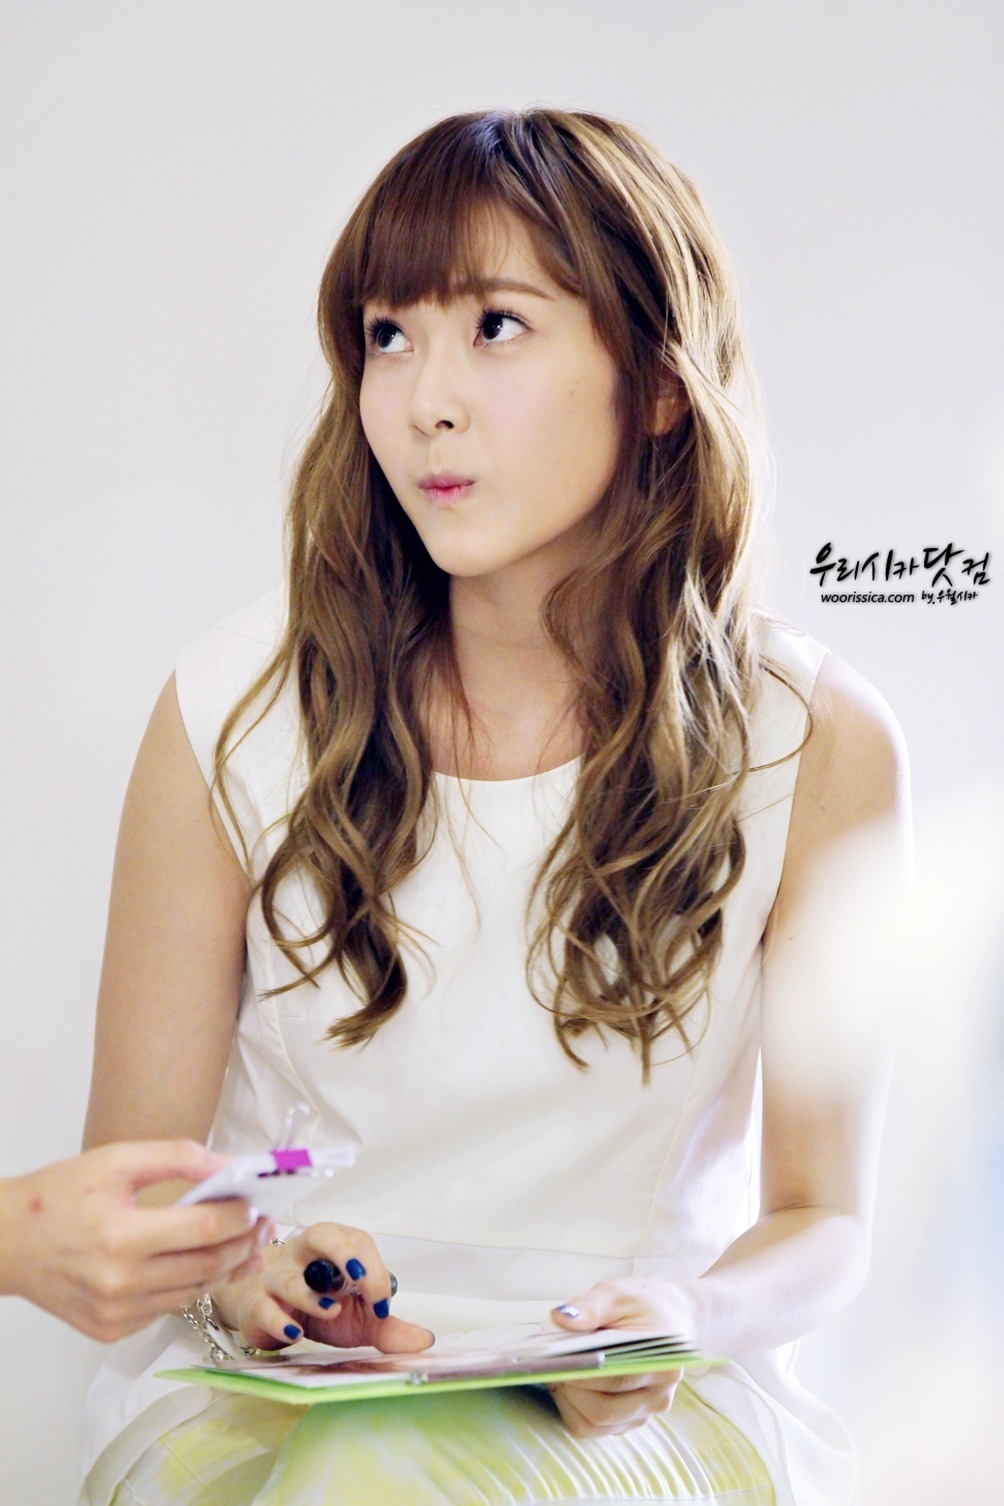 [PIC][15-06-2012]Jessica ghé thăm cửa hàng "COMING STEP" tại Gangnam vào trưa nay - Page 6 Tumblr_m5toi0bkgL1qitdj1o1_1280